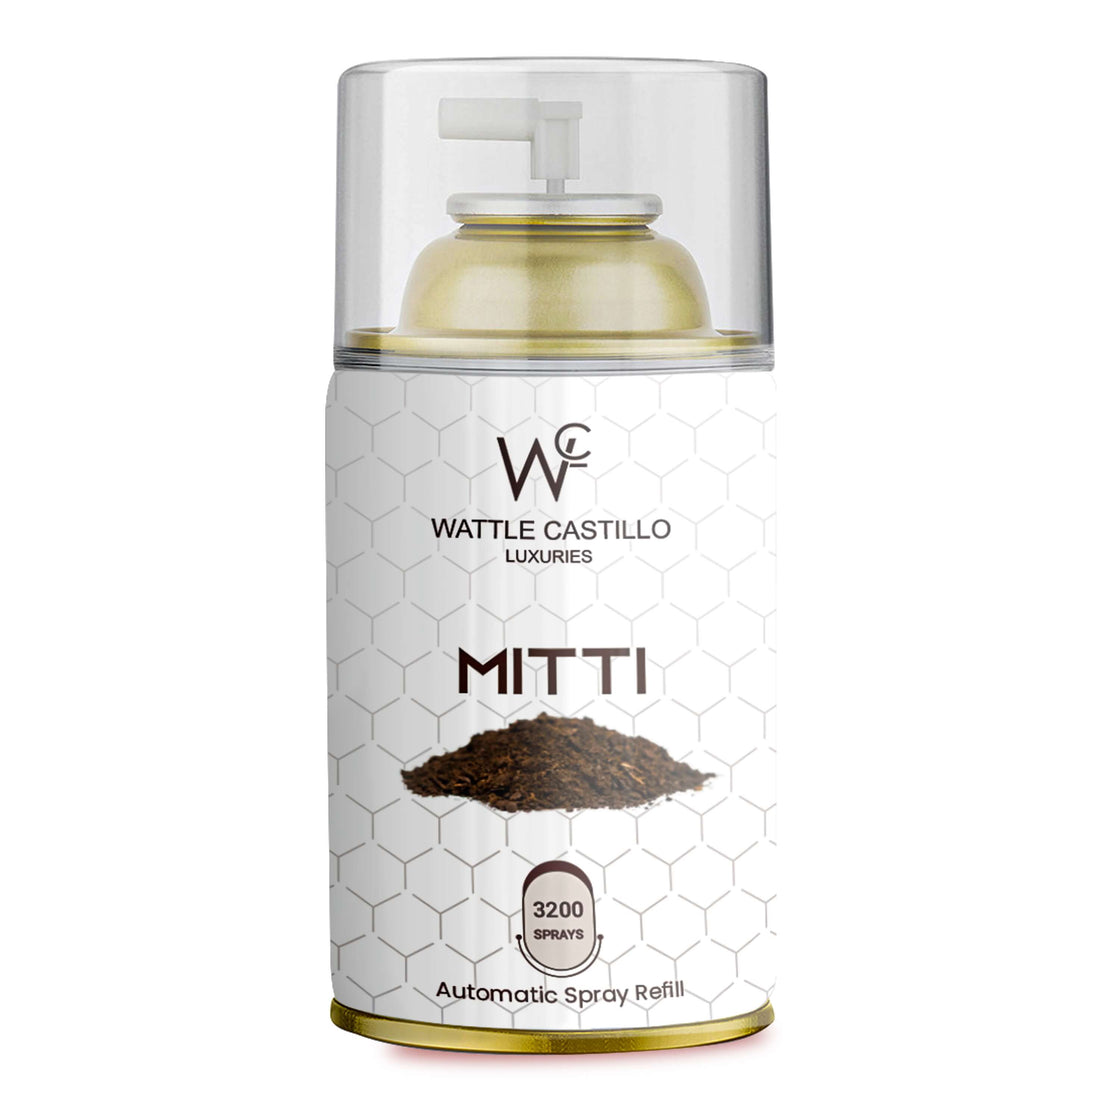 Wattle castillo Automatic Refill - Automatic Room Fresheners Combo | Freshsky and Mitti (300ml) - Wattle Castillo